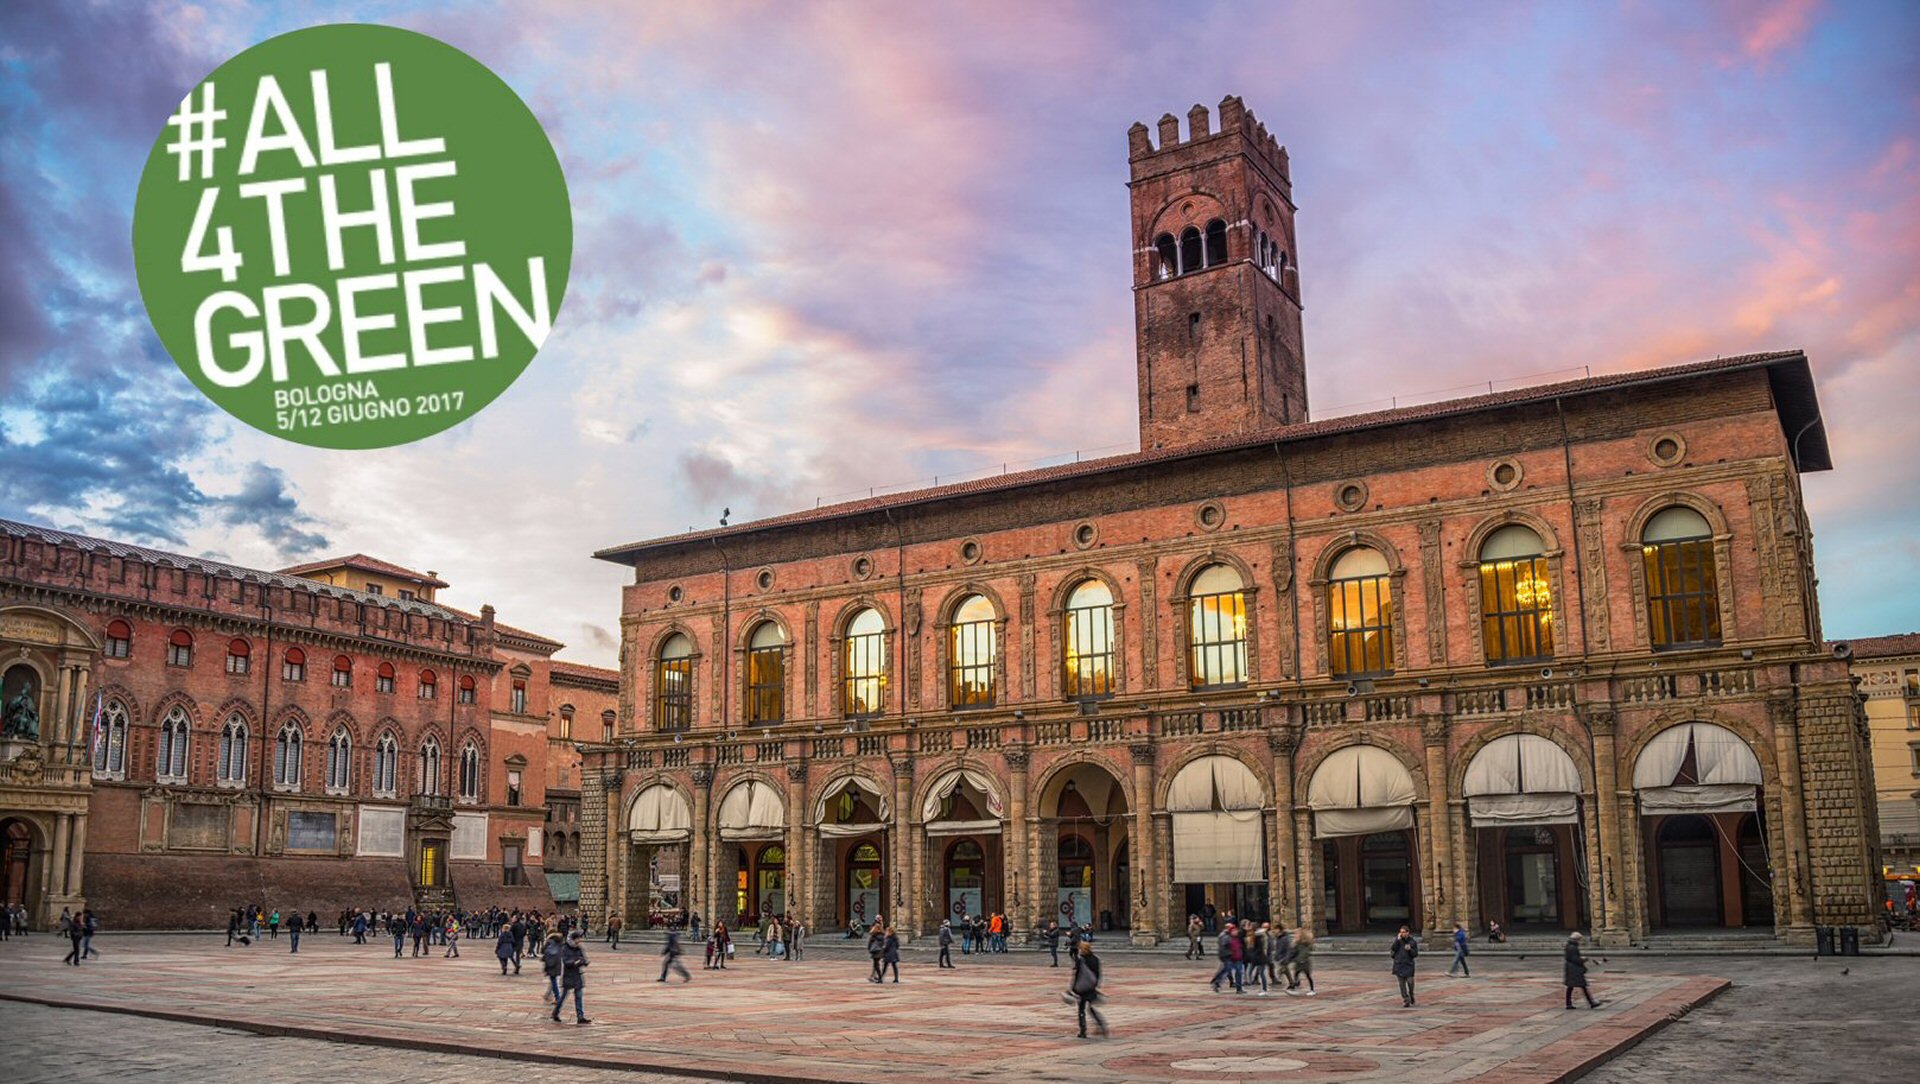 G7: Bologna capitale mondiale dell’ambiente, dal 5 al 12 giugno #All4TheGreen